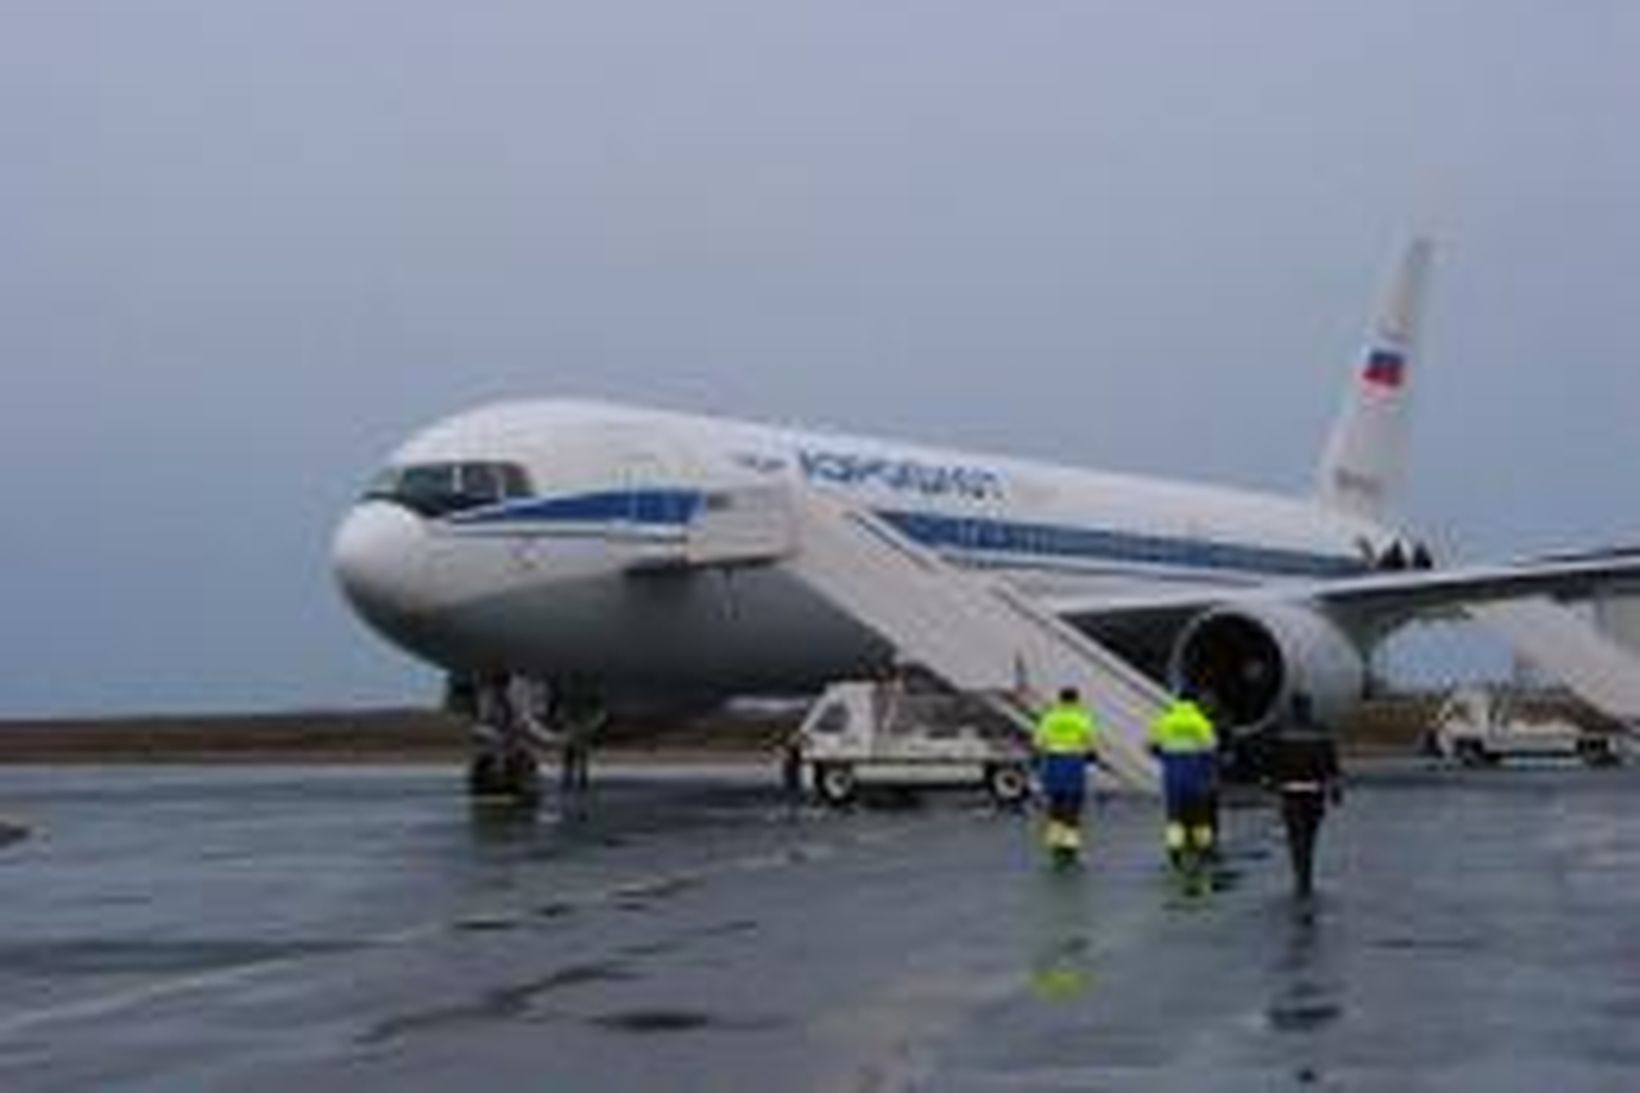 Flugvél rússneska flugfélagsins Aeroflot á Keflavíkurflugvelli.